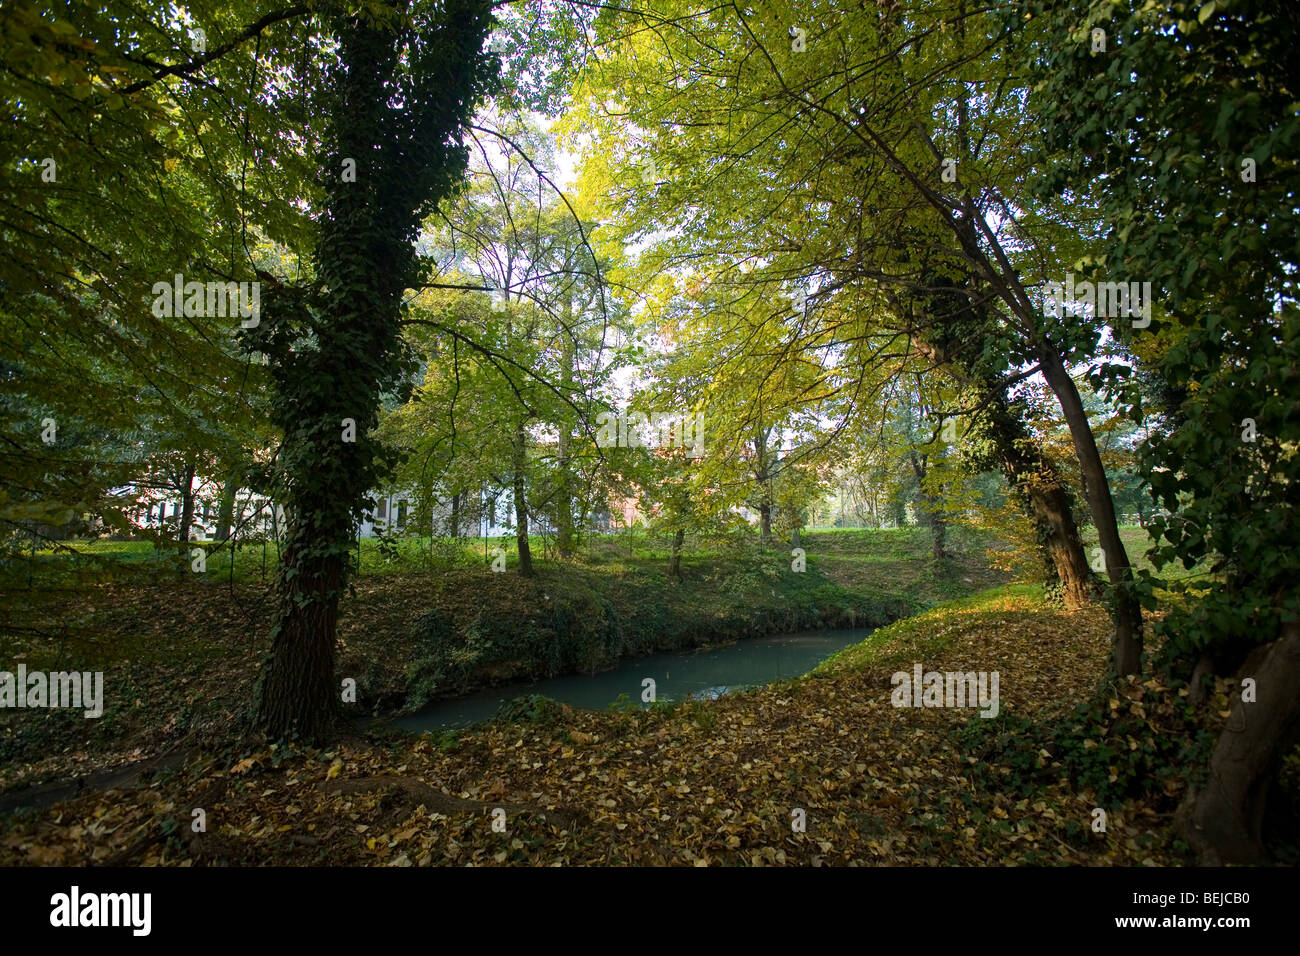 Astichello river, Park Querini, Vicenza, Veneto, Italy Stock Photo